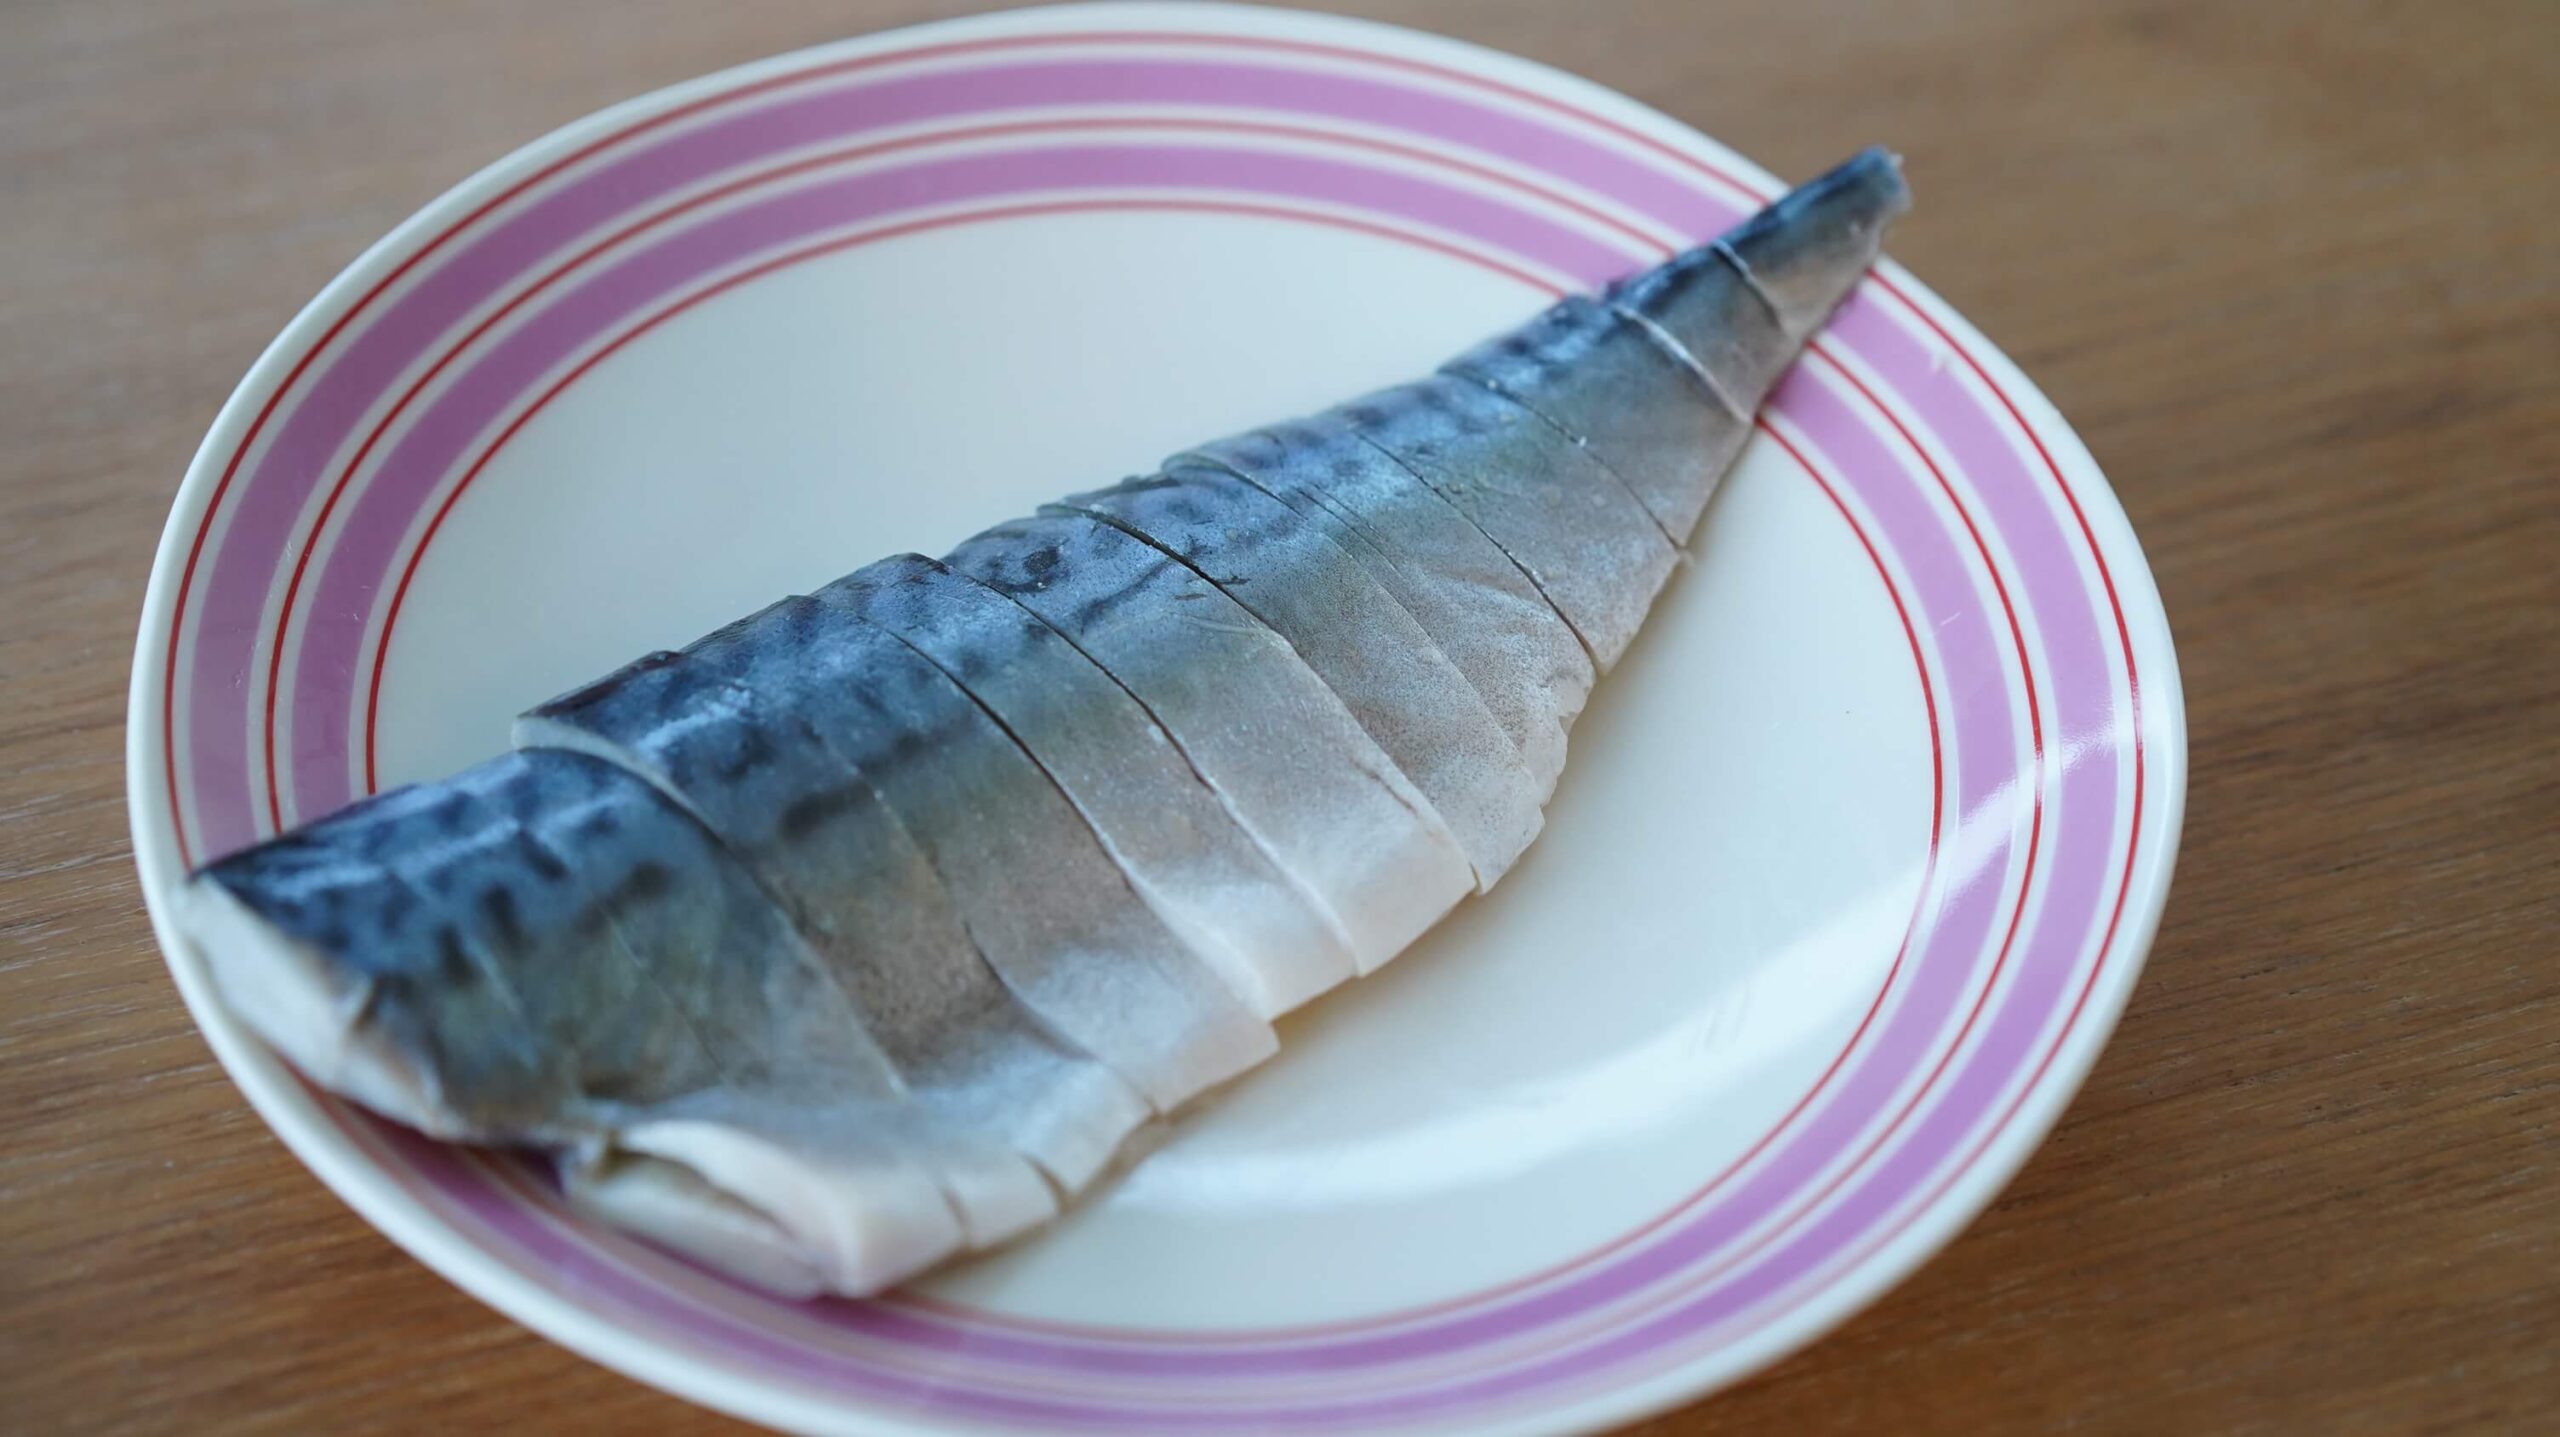 生協（コープ）の冷凍食品「国産素材・しめさば」の鯖を皿に盛りつけた写真